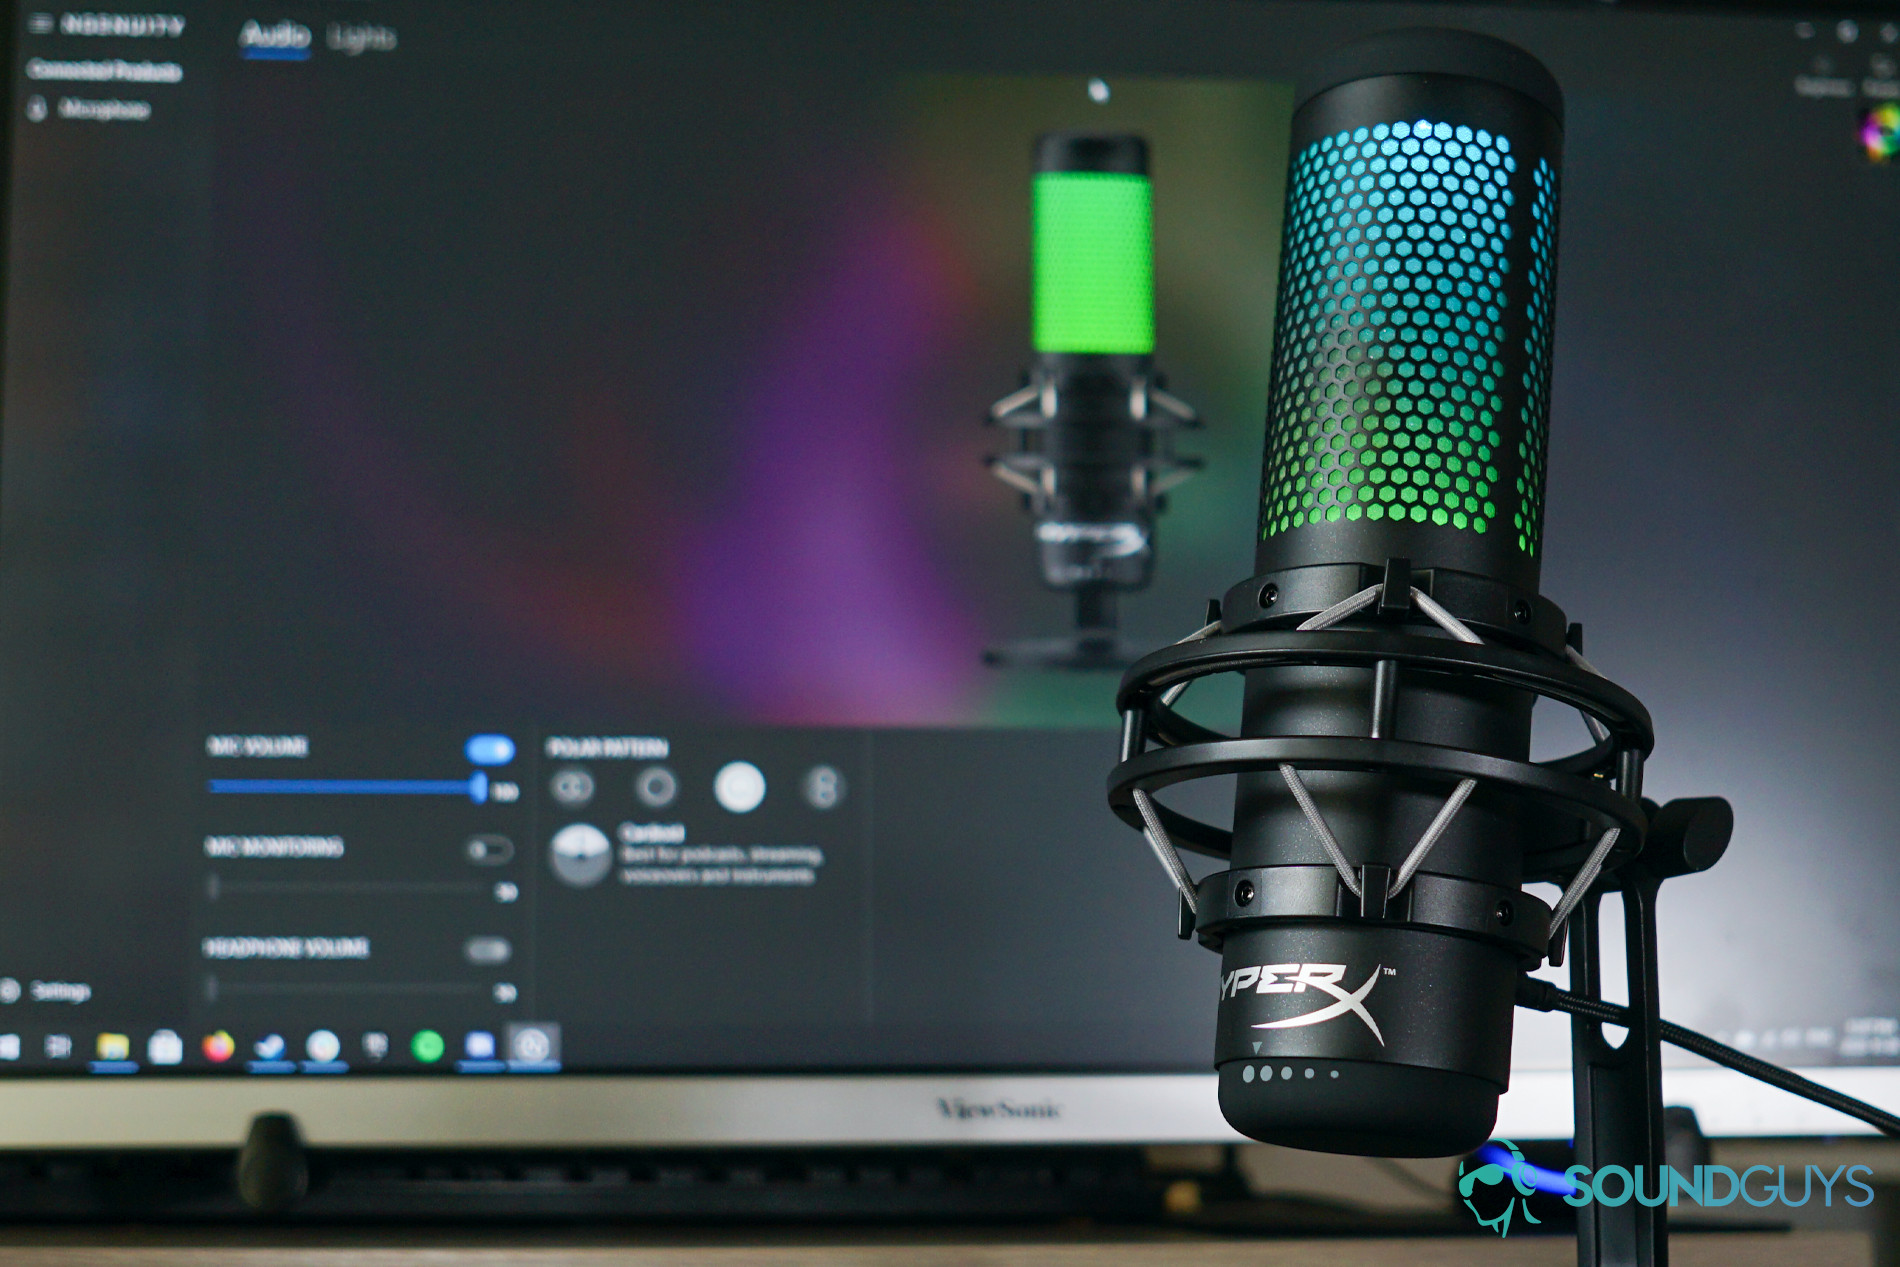 QuadCast S – USB Condenser Gaming Microphone